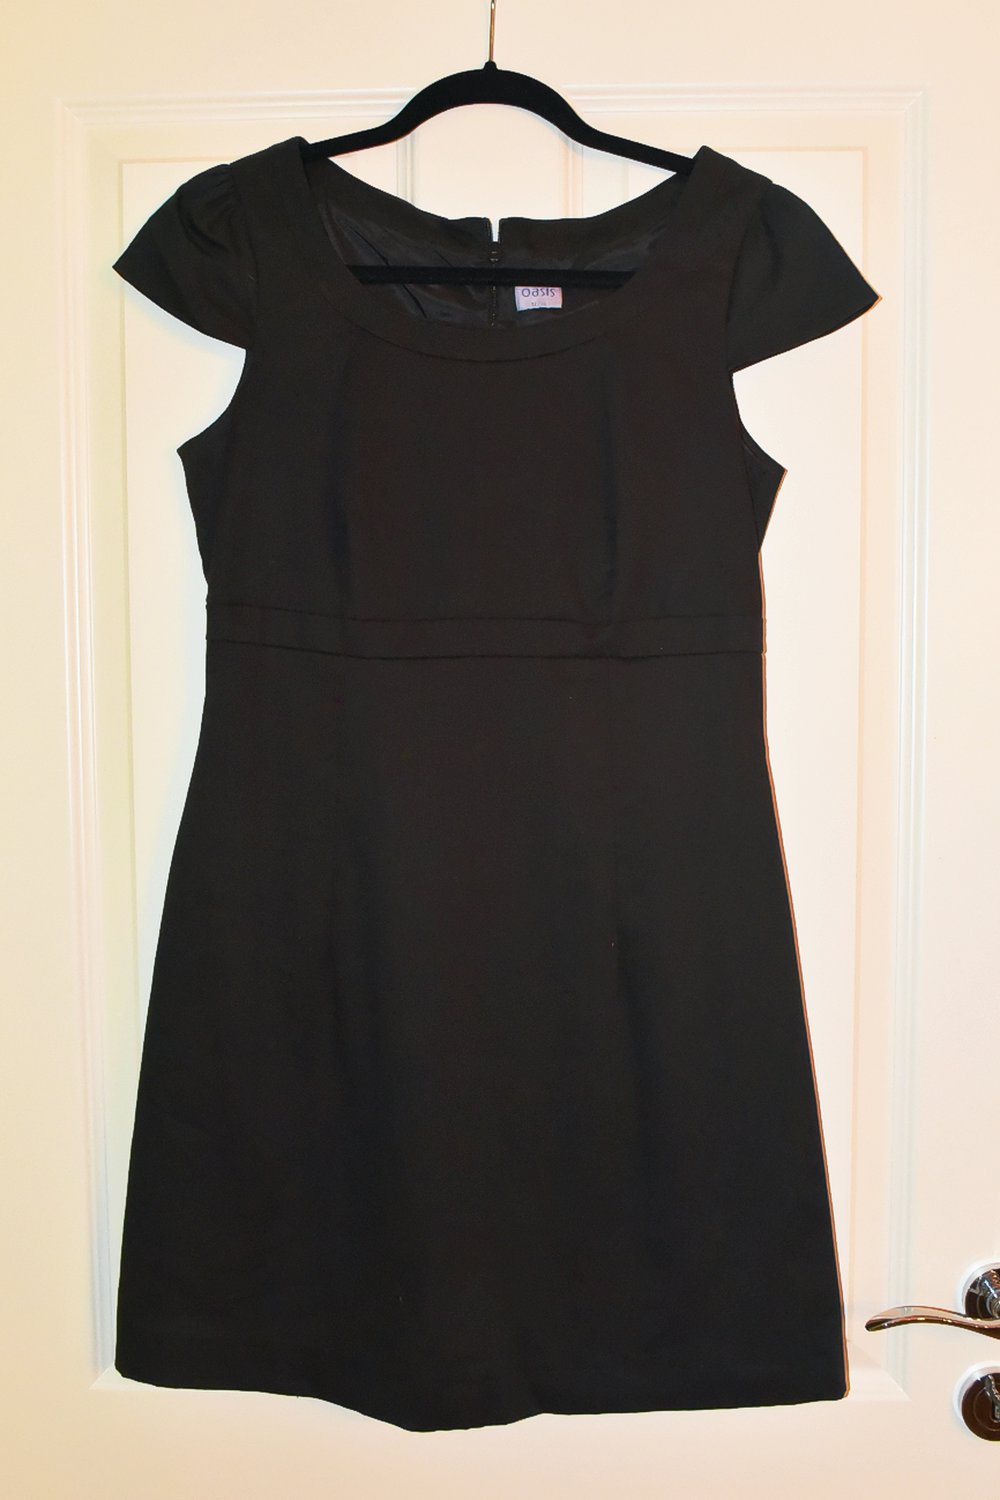 Schwarzes Kleid im klassischen Stil.